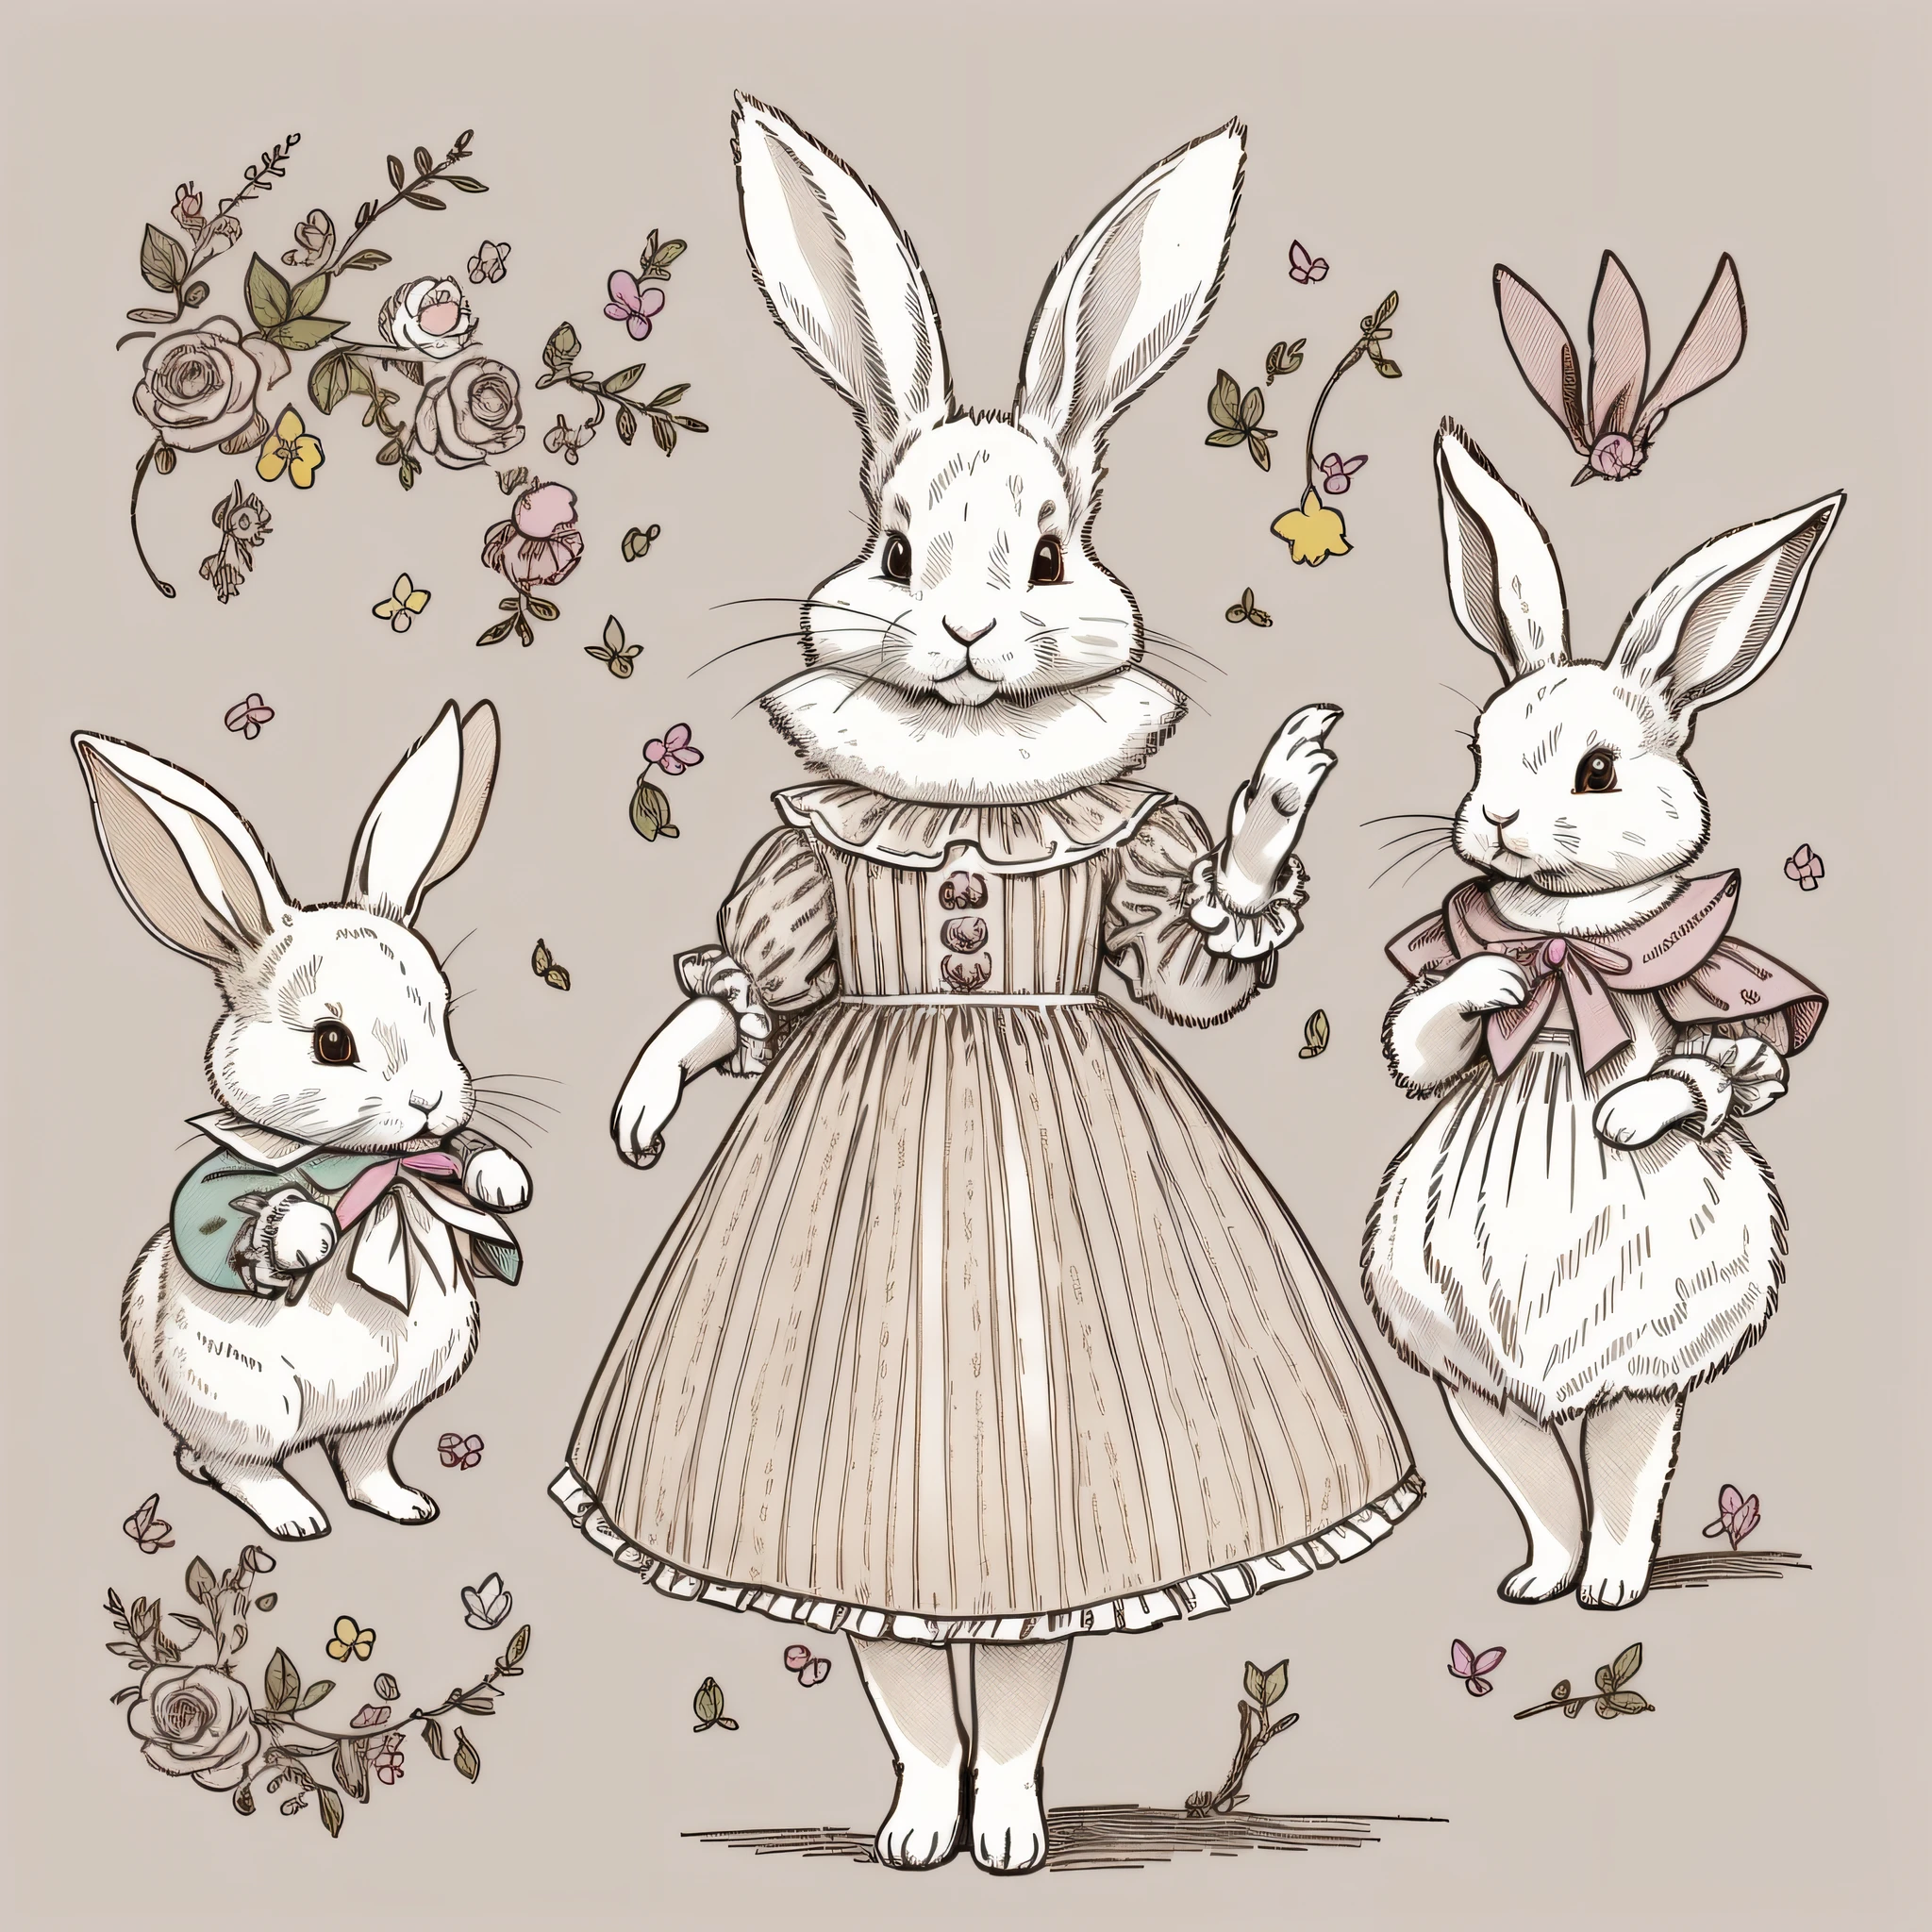 多様なポーズと表情, 子どもの絵本の絵, 服を着たウサギ, 白いうさぎ, 二足歩行, ウサギの擬人化, 三頭, 設定画, かわいい, ウサギの耳2つ, カラーイラスト, 設定資料, カラフルな色彩, デフォルメされたウサギ, 18世紀フランスの衣服,